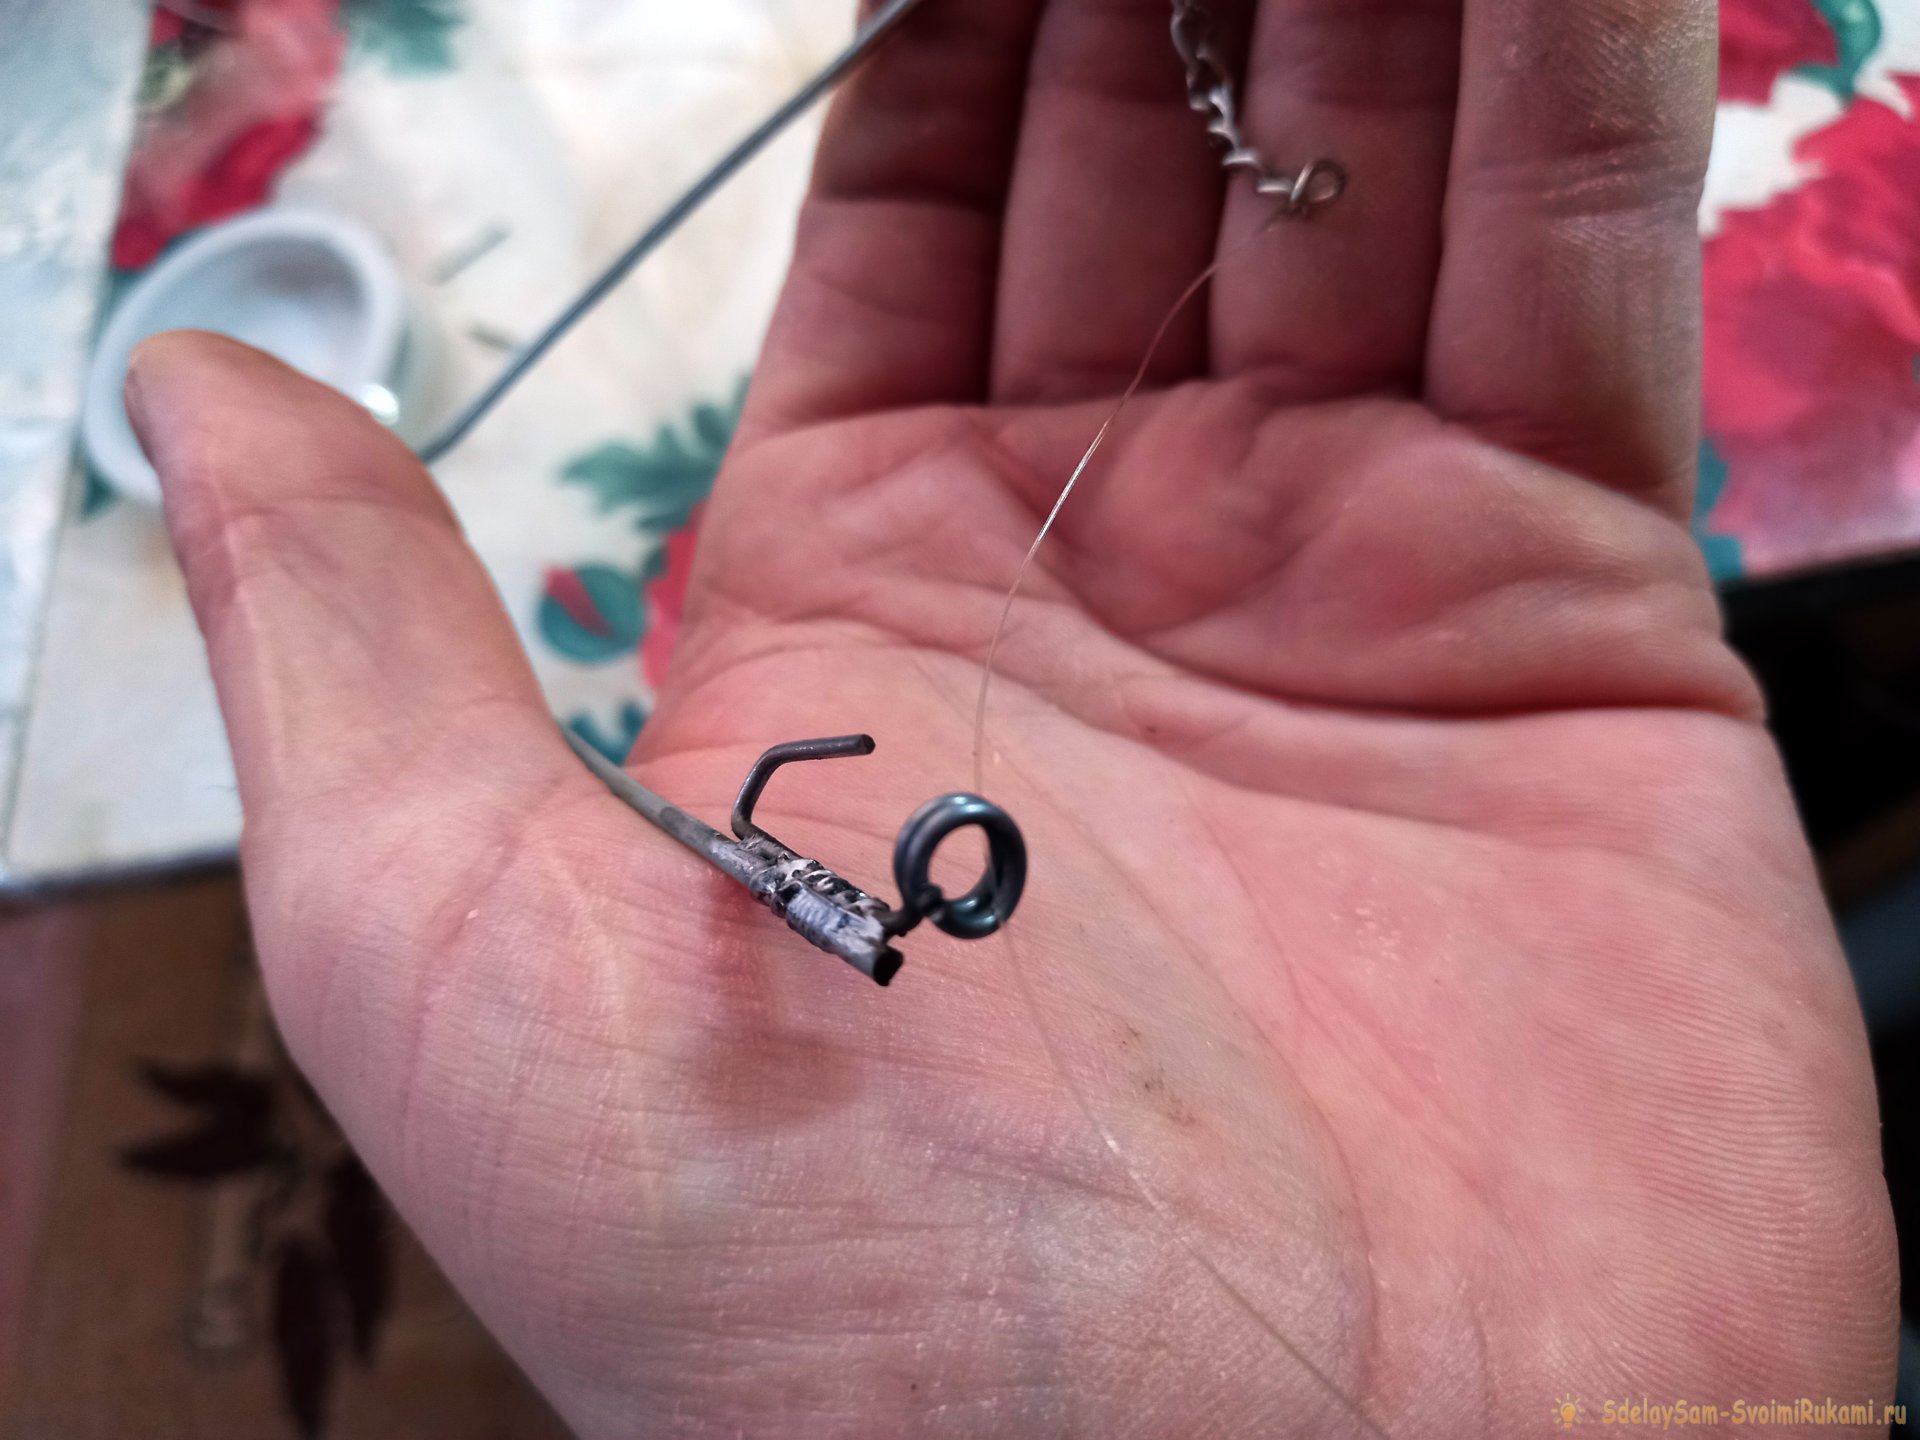 Как сделать самоподсекающее устройство для ловли рыбы на удочку